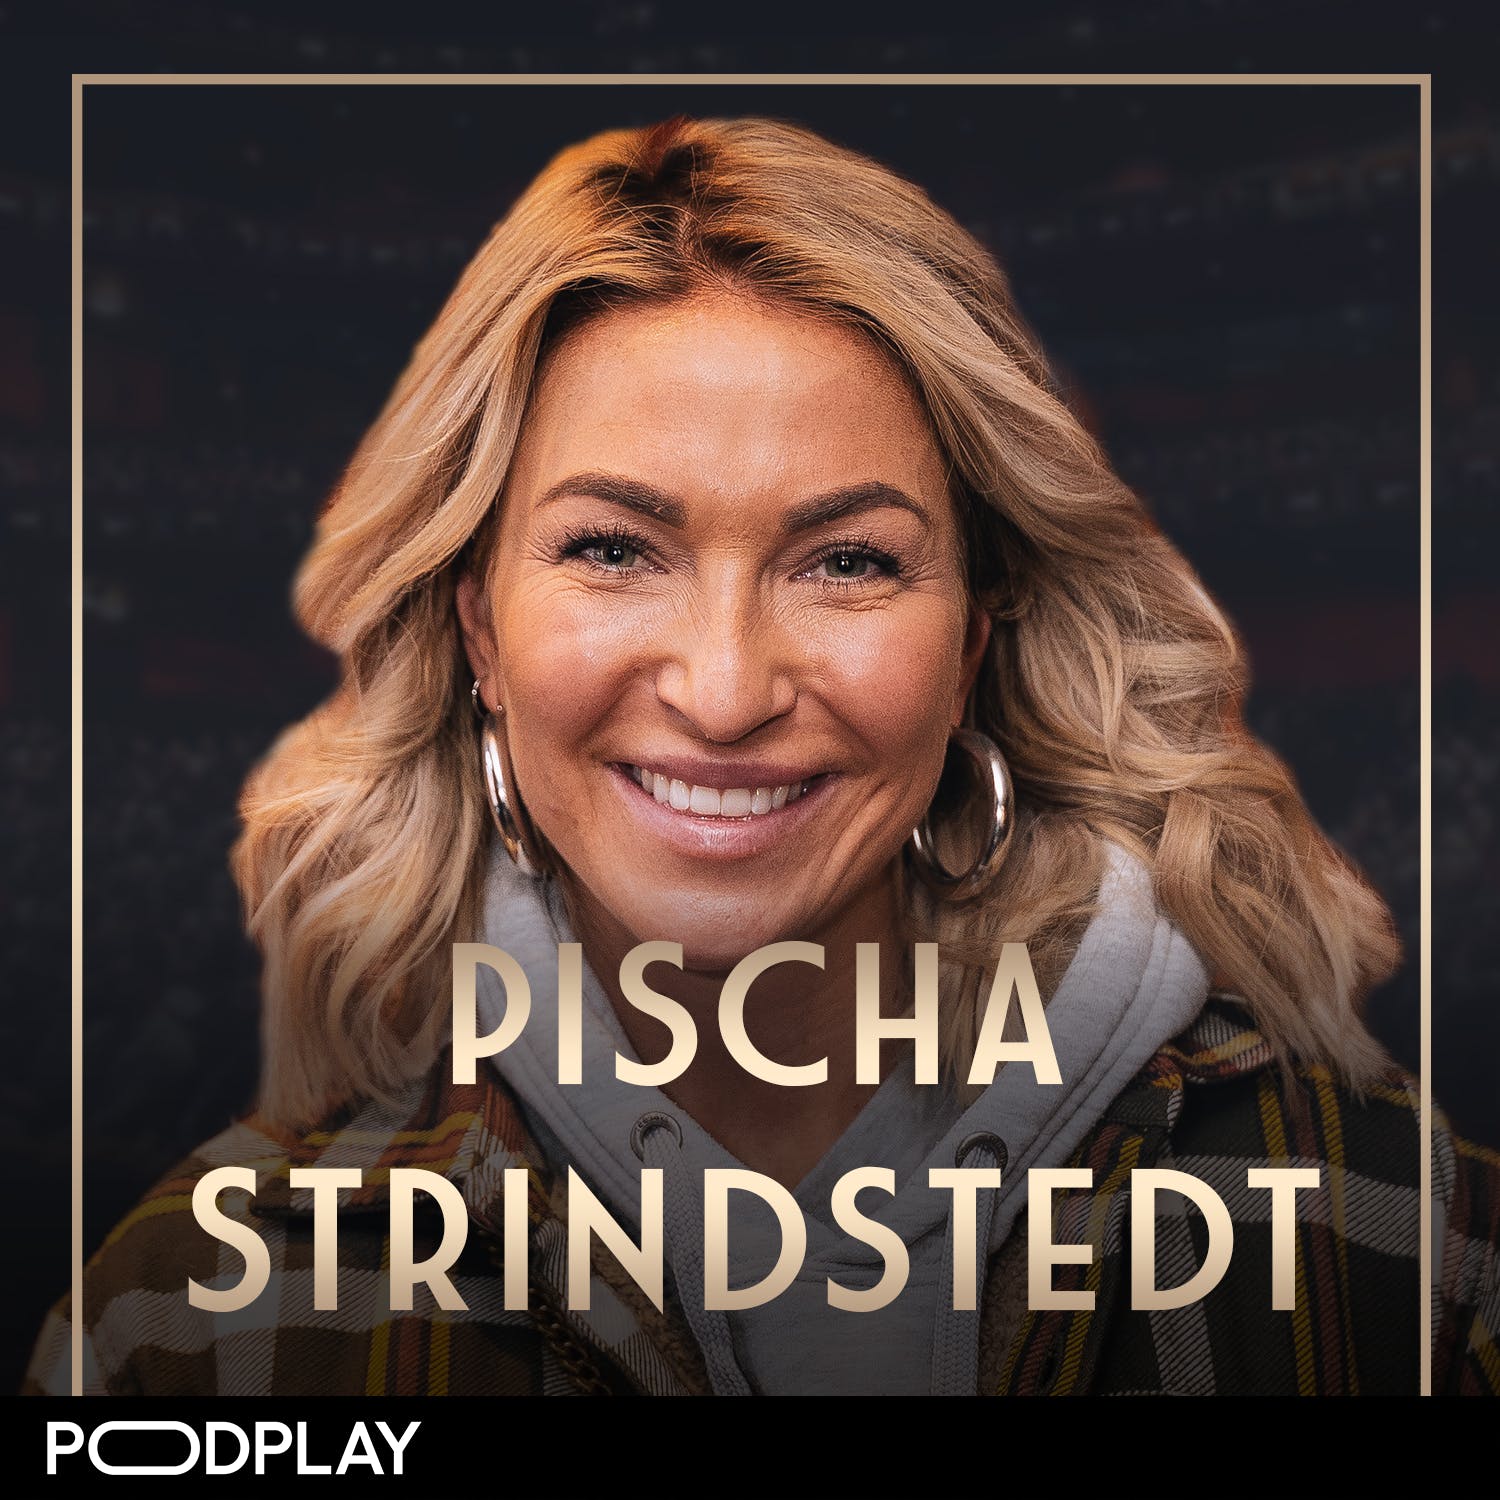 385. Pischa Strindstedt - "Ville bara dö, blev Årets PT", Original